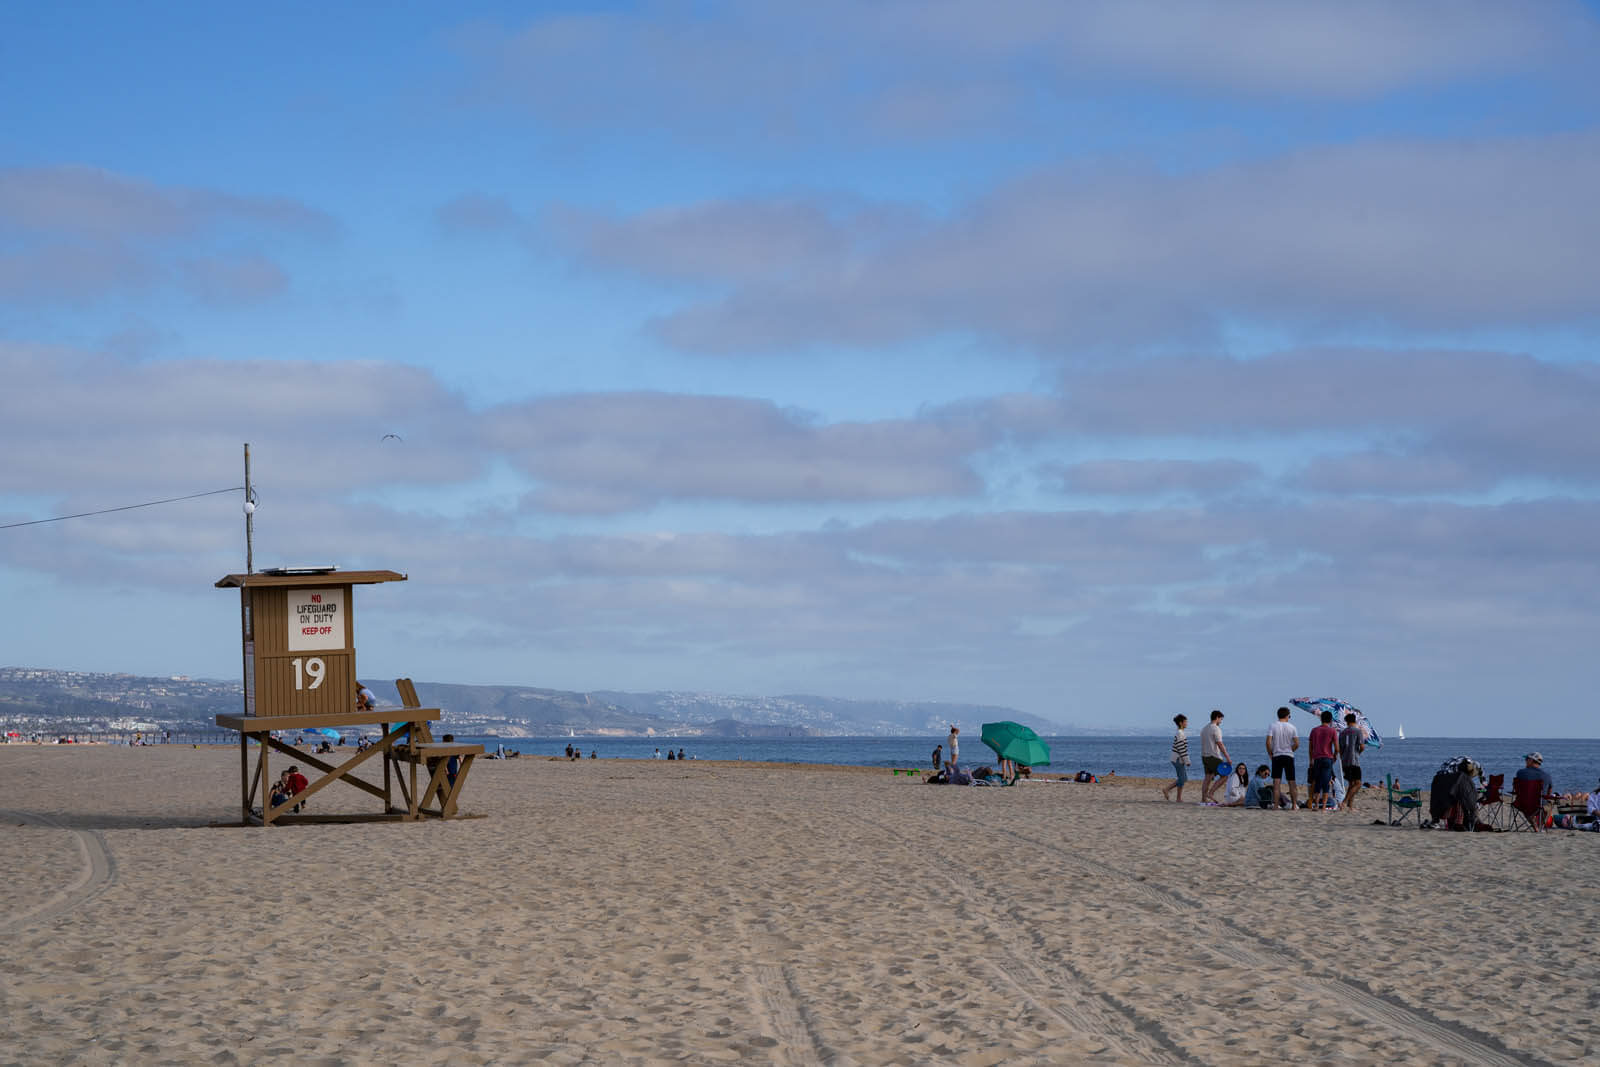 a stretch of beach and view in Newport Beach California